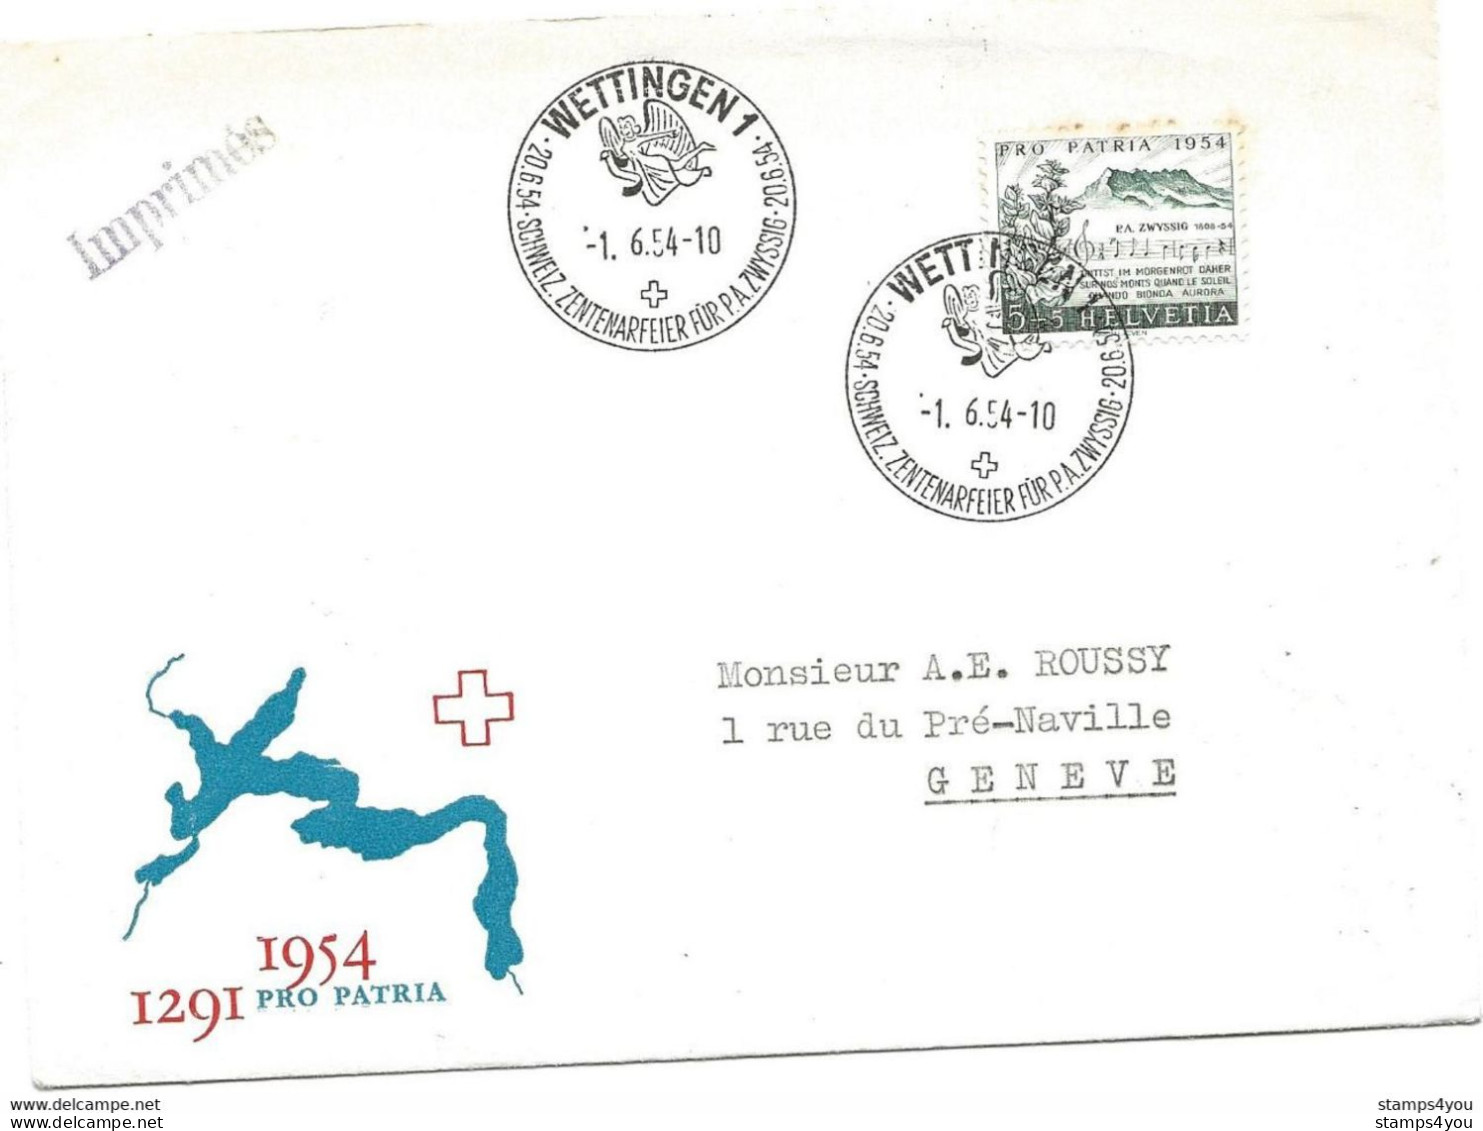 125 - 7 - Enveloppe Avec Oblit Spéciale "Wettingen Schweiz. Zenterarfeier Für PA Zwyssig 1954" - Marcofilie